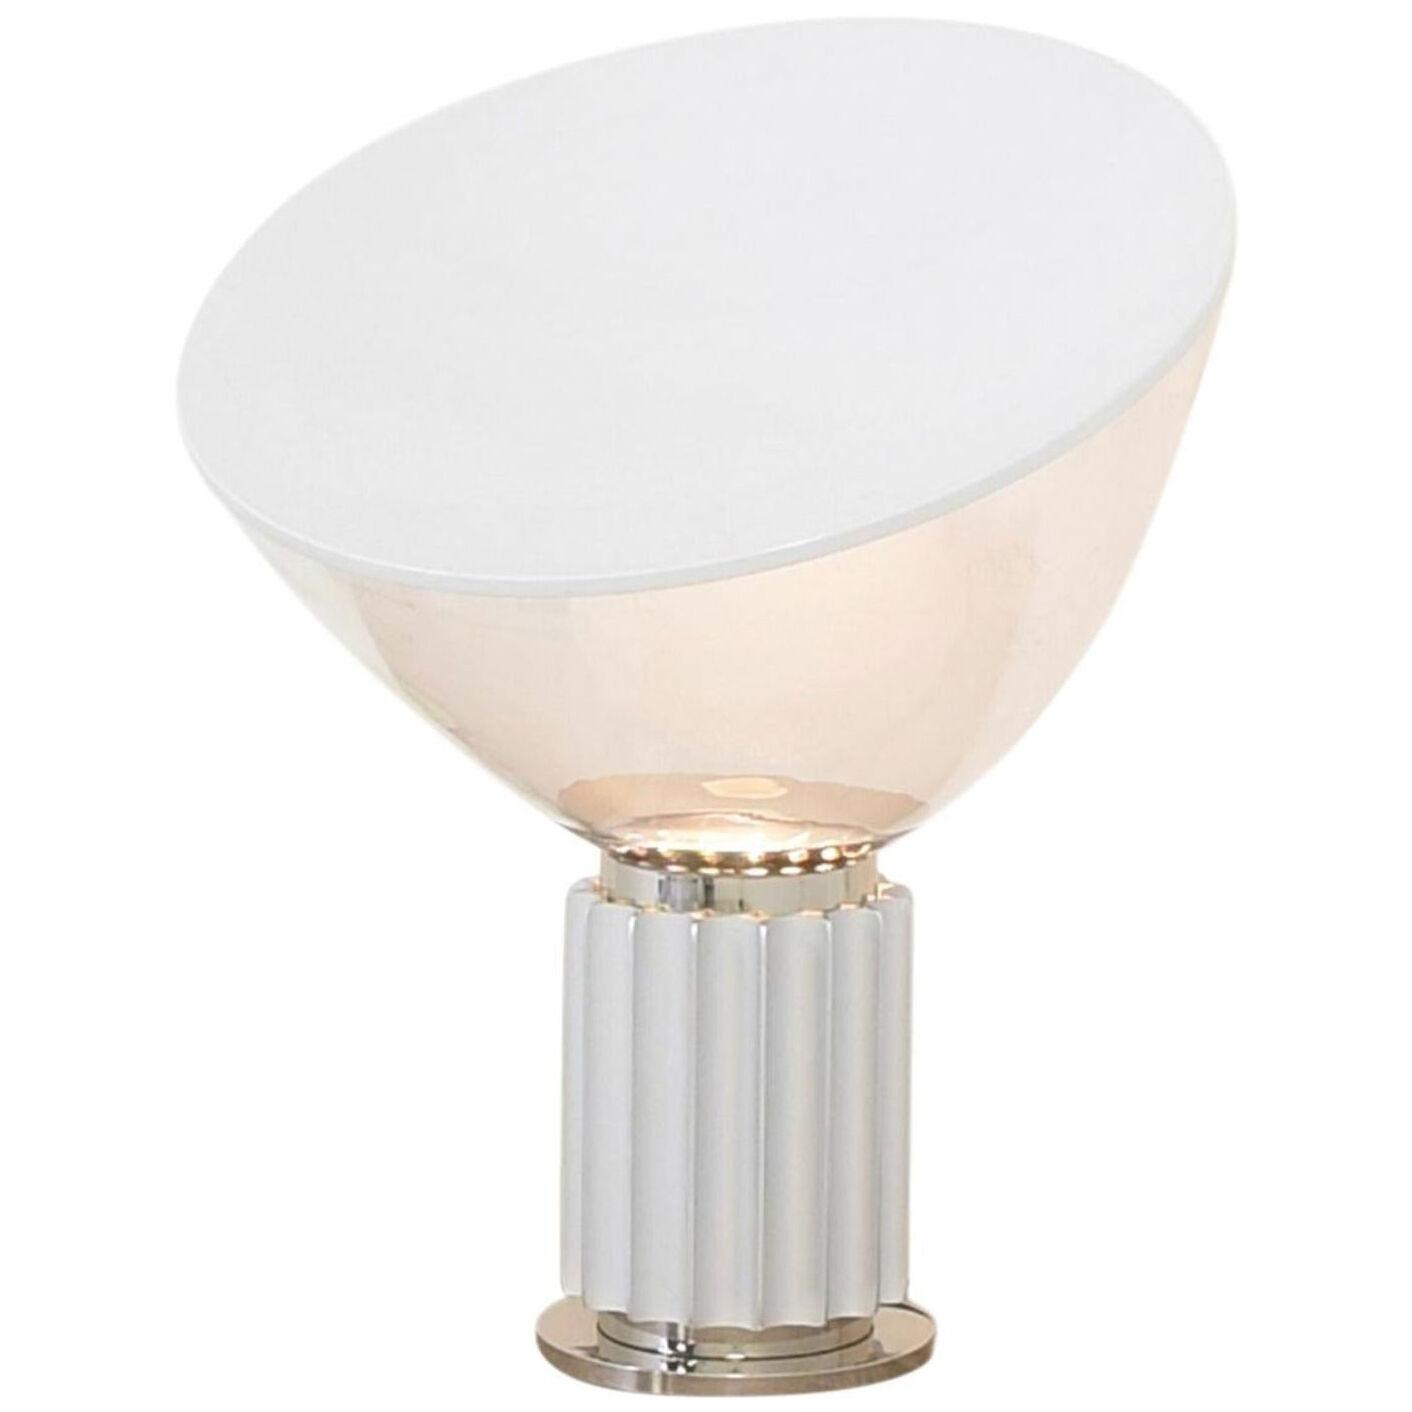 Achille Castiglioni for Flos Italian Modern 'Taccia' Table Lamp, Large, Silver